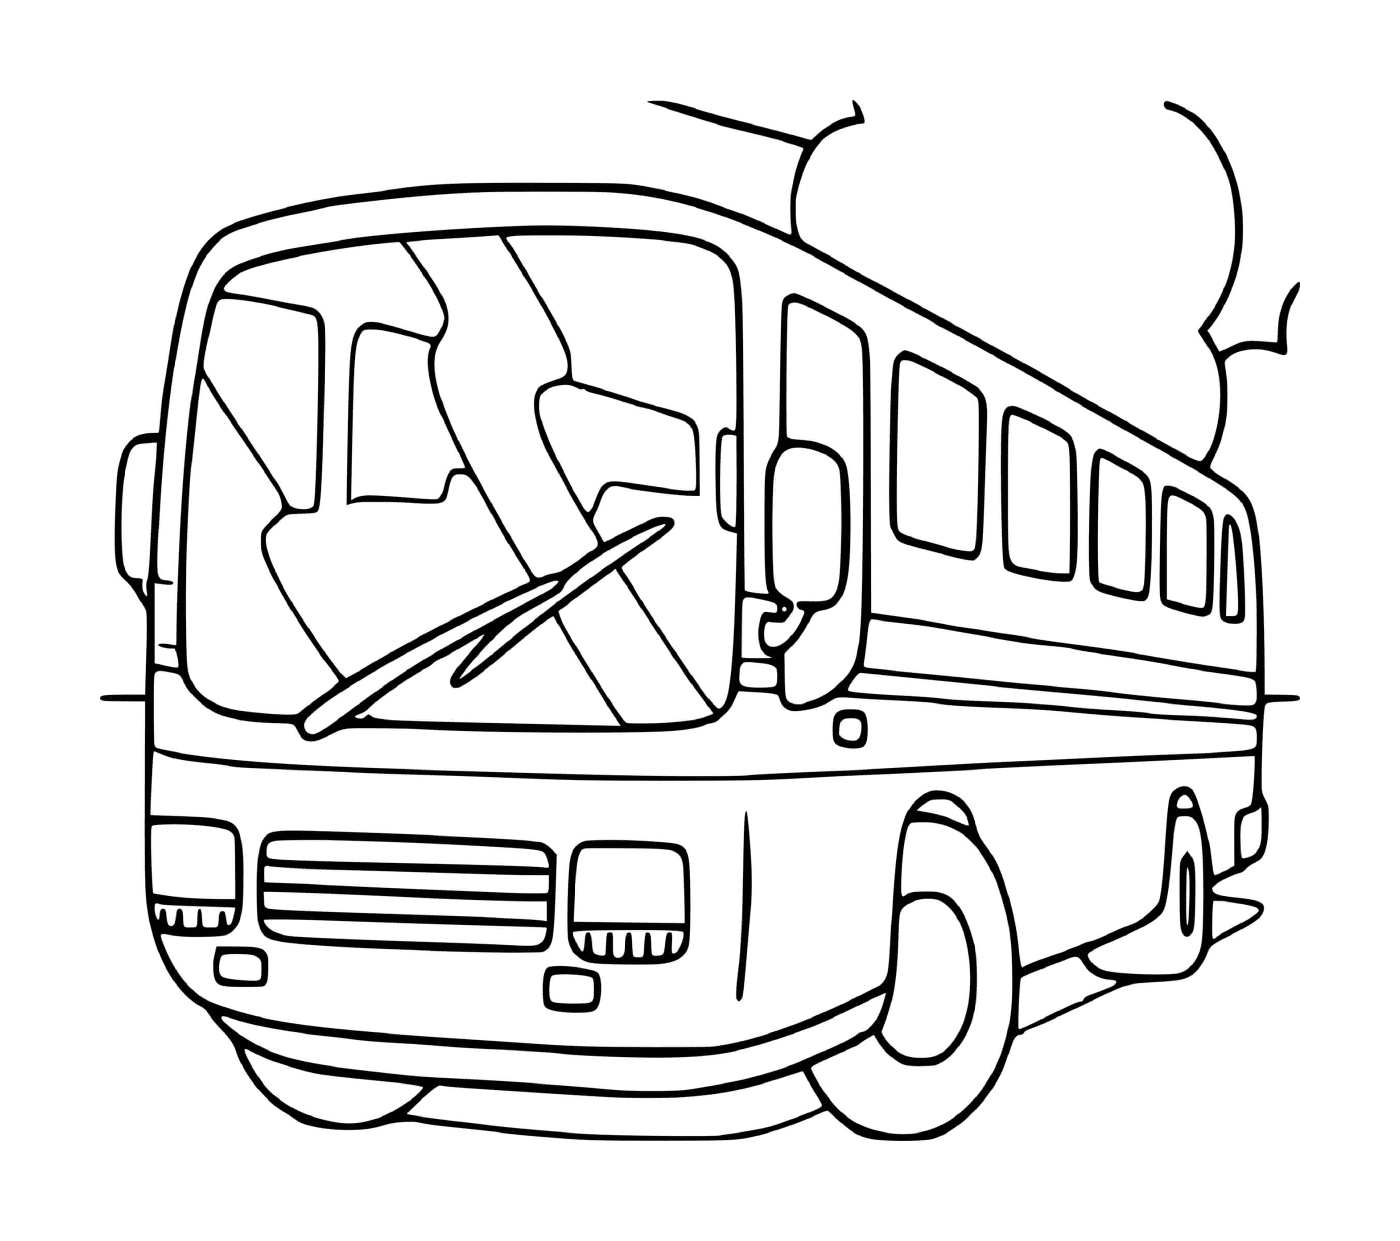  公车 